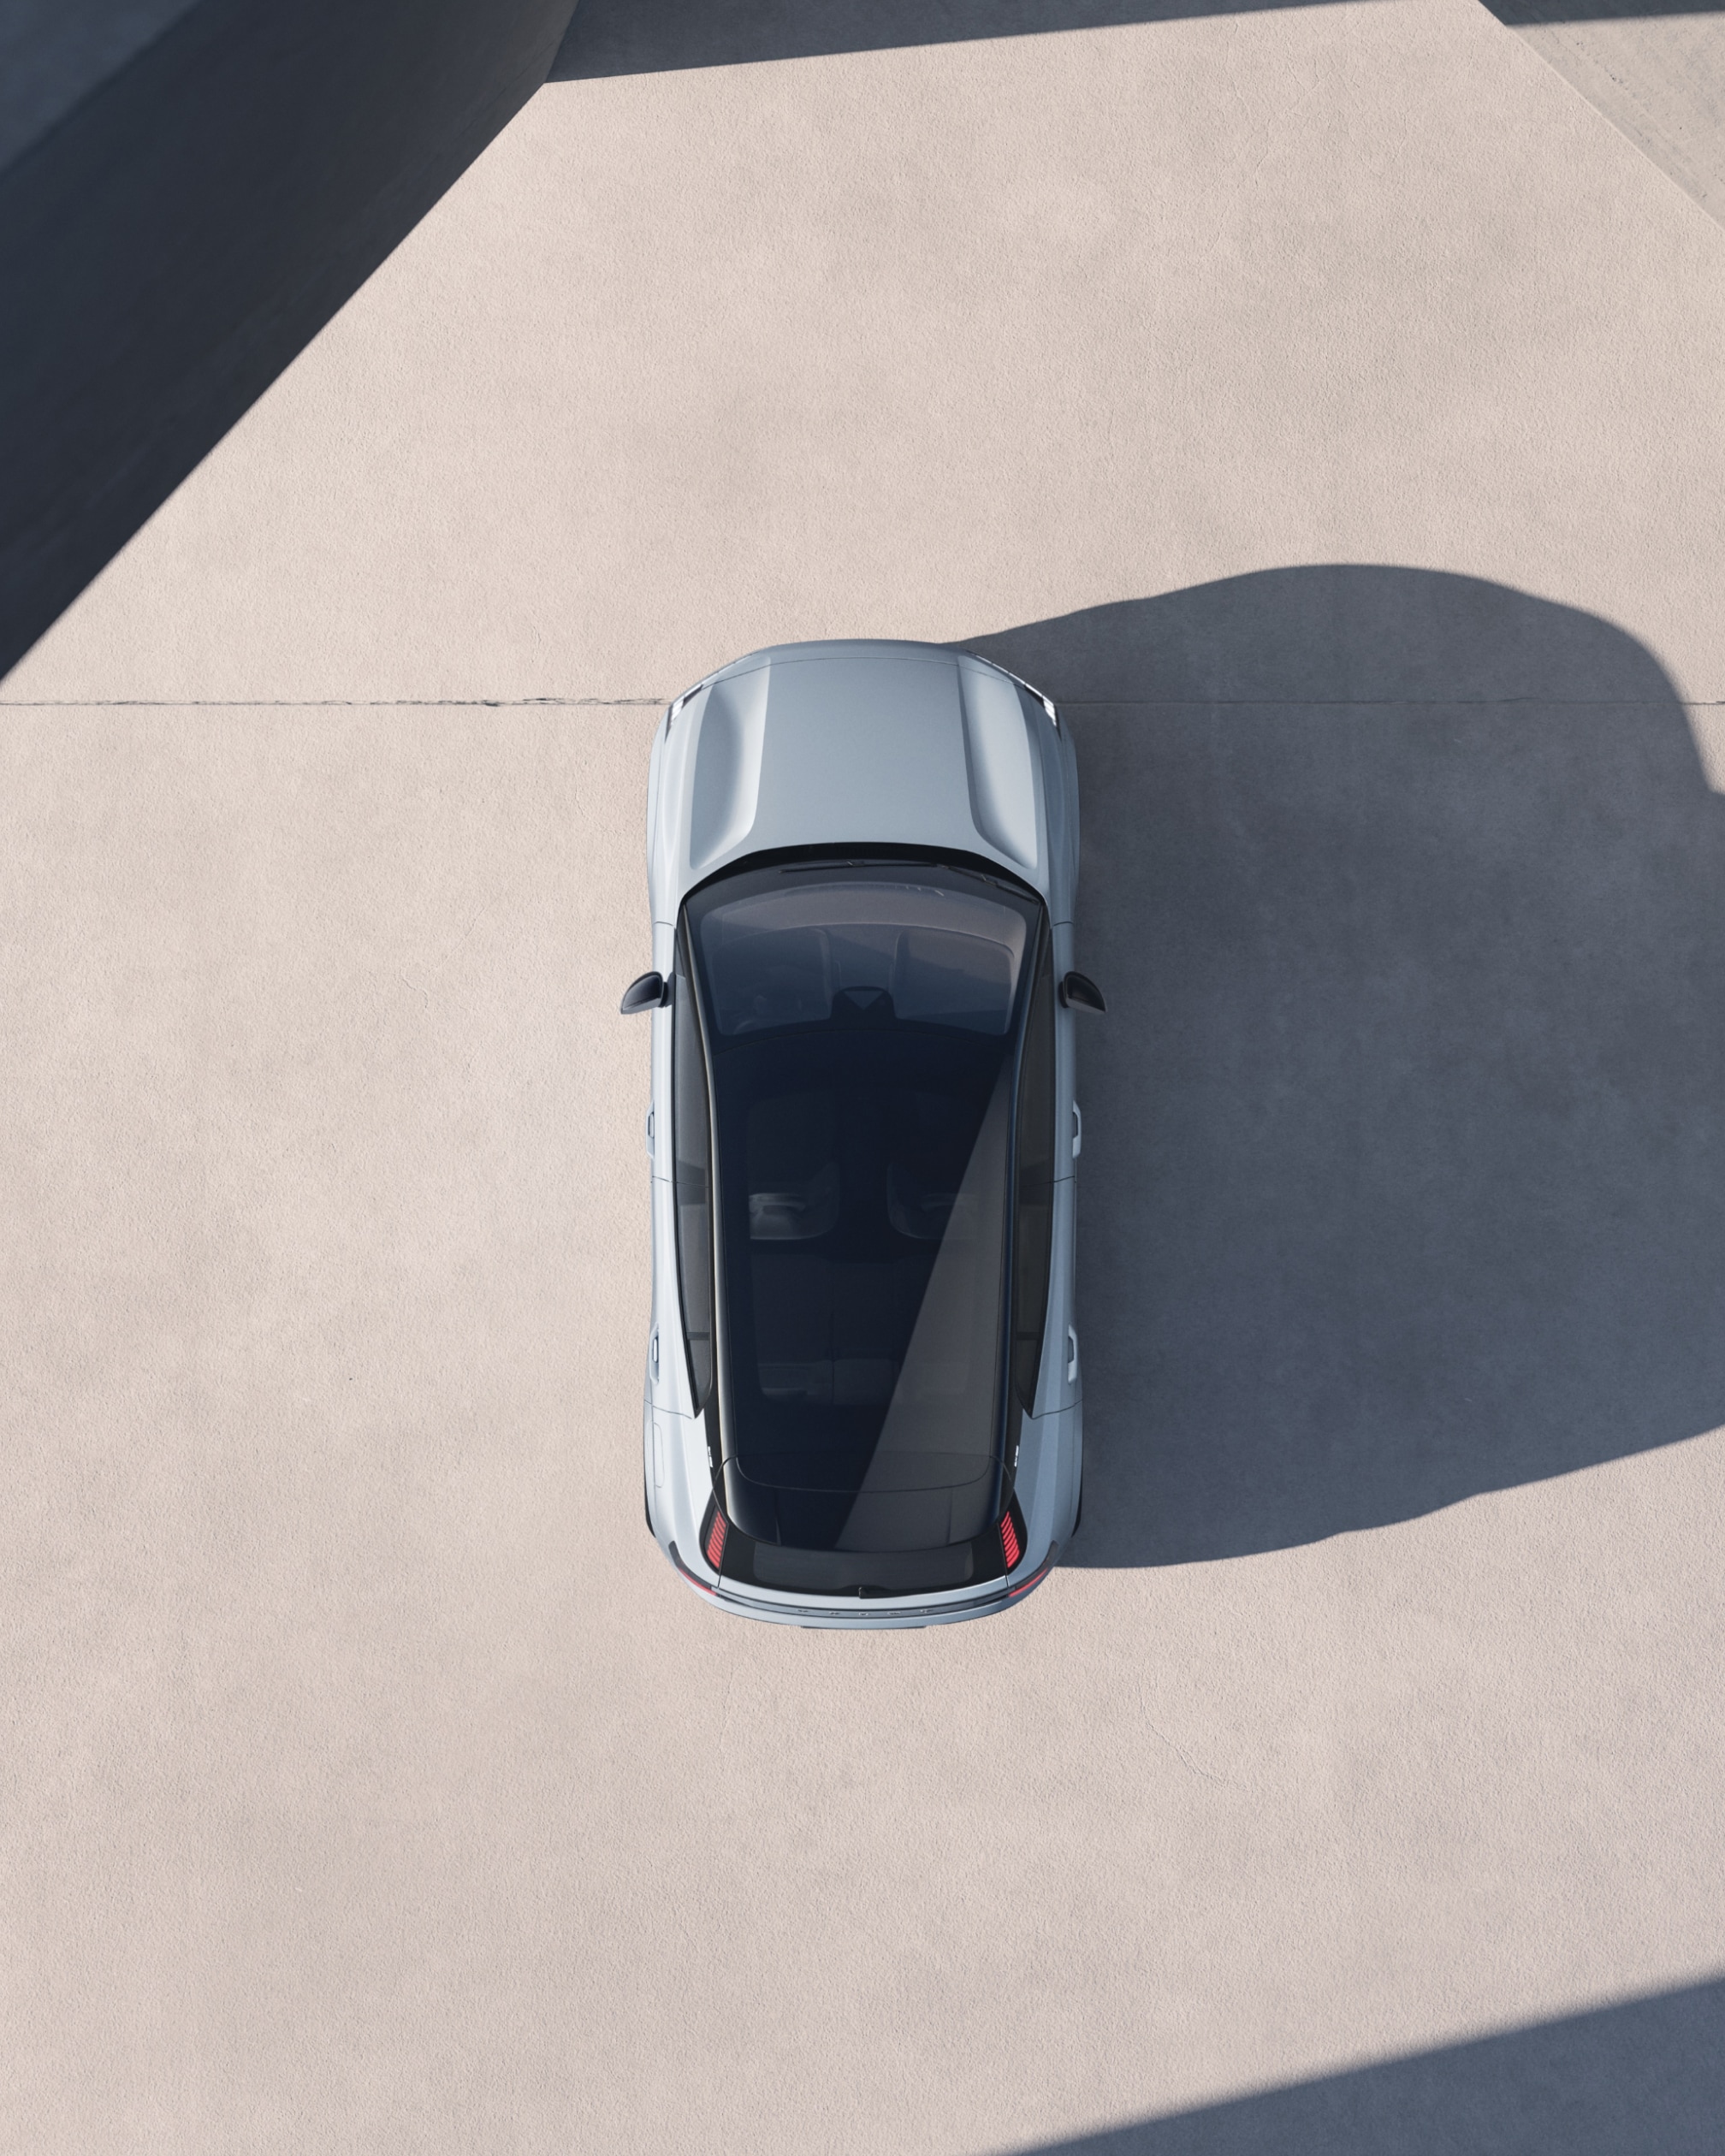 Вид с высоты птичьего полета на автомобиль Volvo EX30, ярко освещенный сбоку и отбрасывающий длинную тень.